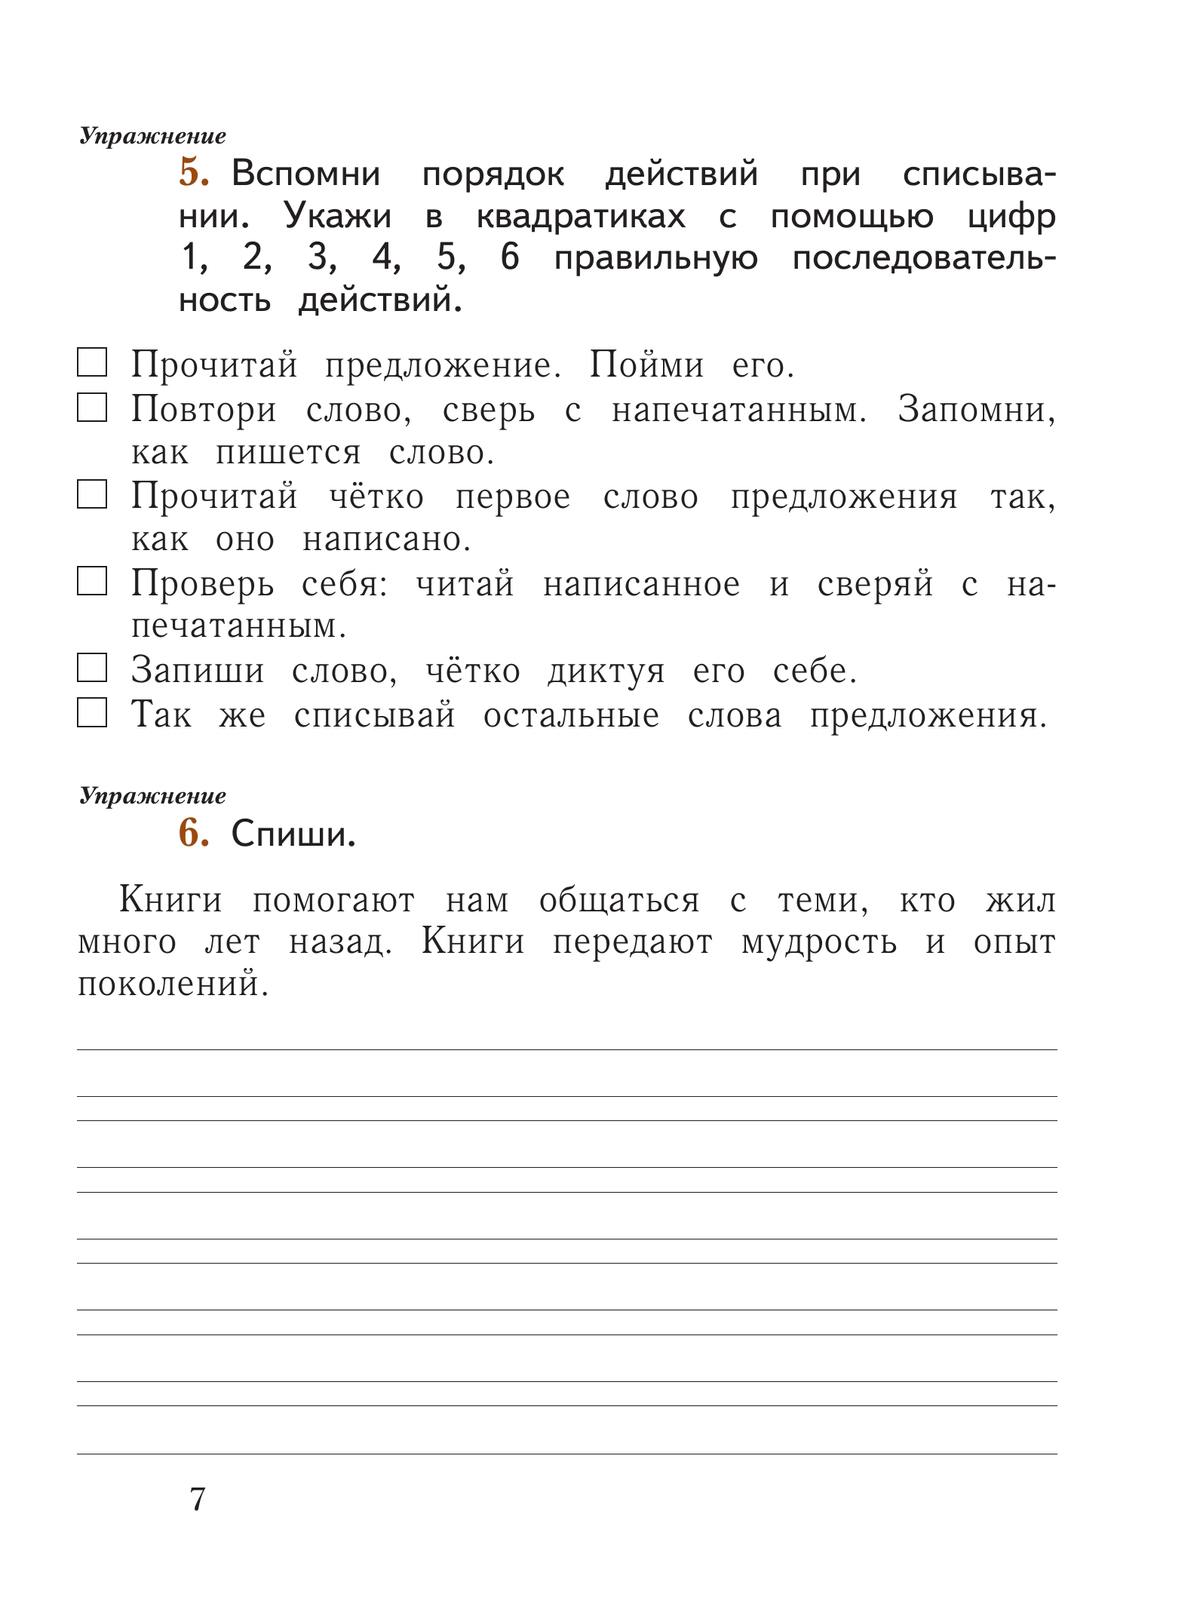 Русский язык. 1 класс. Рабочая тетрадь. В 2 частях. Часть 1 8